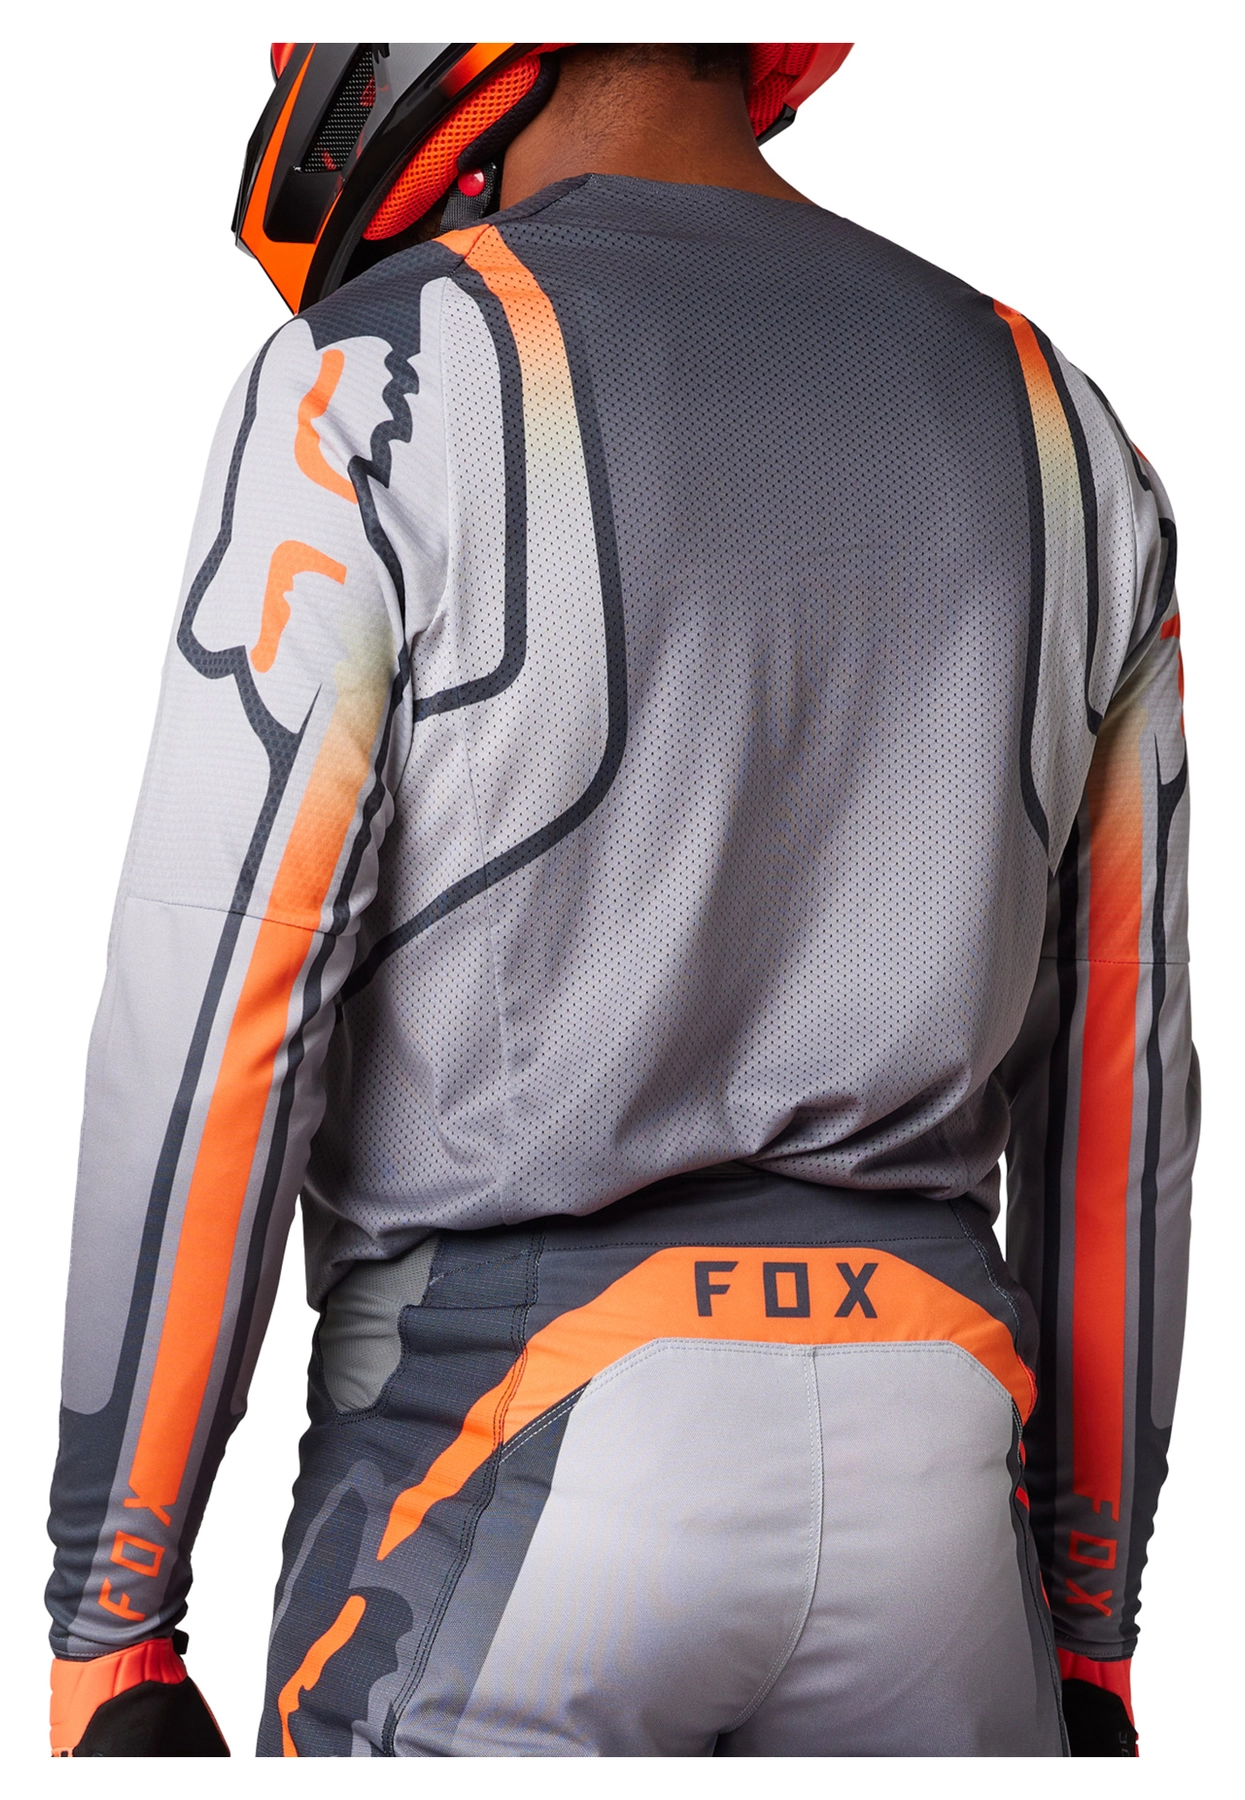 Fox FOX 360 VIZEN JERSEY low-cost | Louis 🏍️